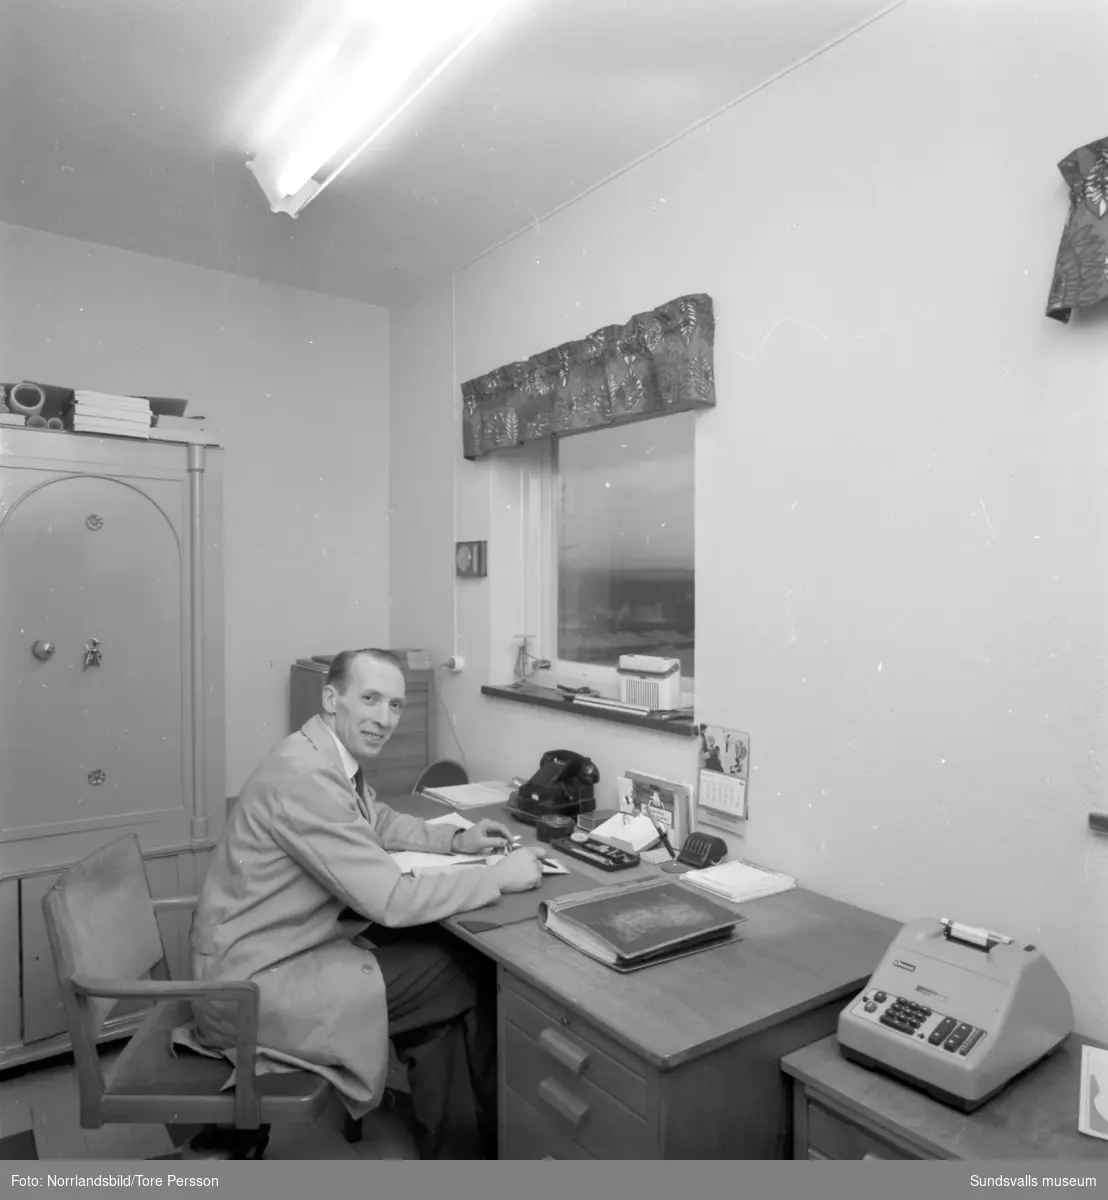 Interiörbilder från Ytterströms nya affär i Stöde. Innehavaren Sven Ytterström på sitt kontor.